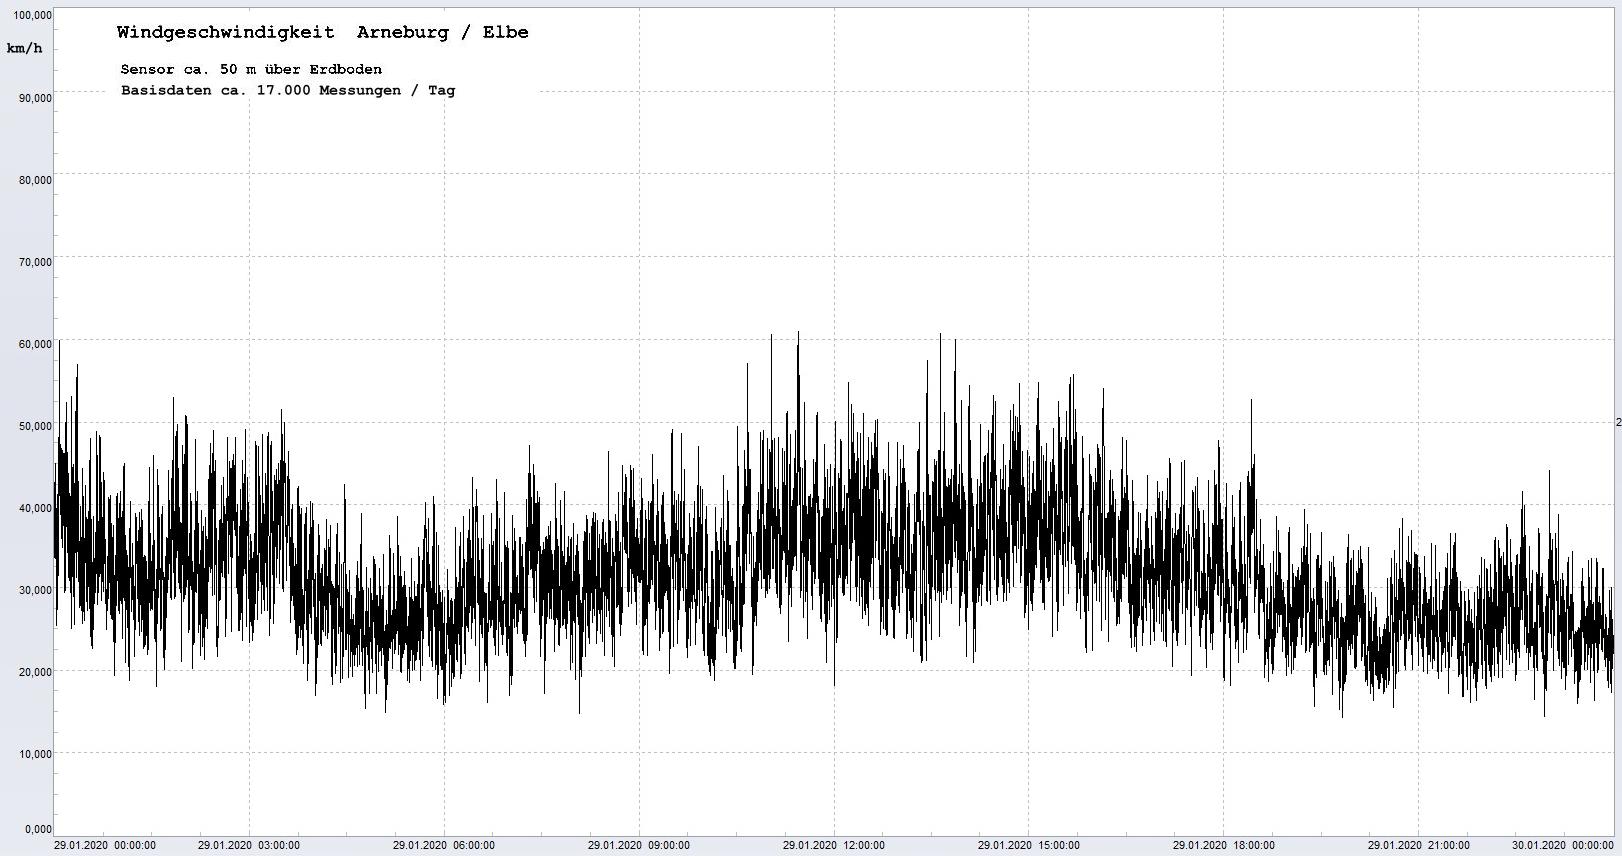 Arneburg Winddaten 29.01.2020, 
  Sensor auf Gebude, ca. 50 m ber Erdboden, 5s-Aufzeichnung